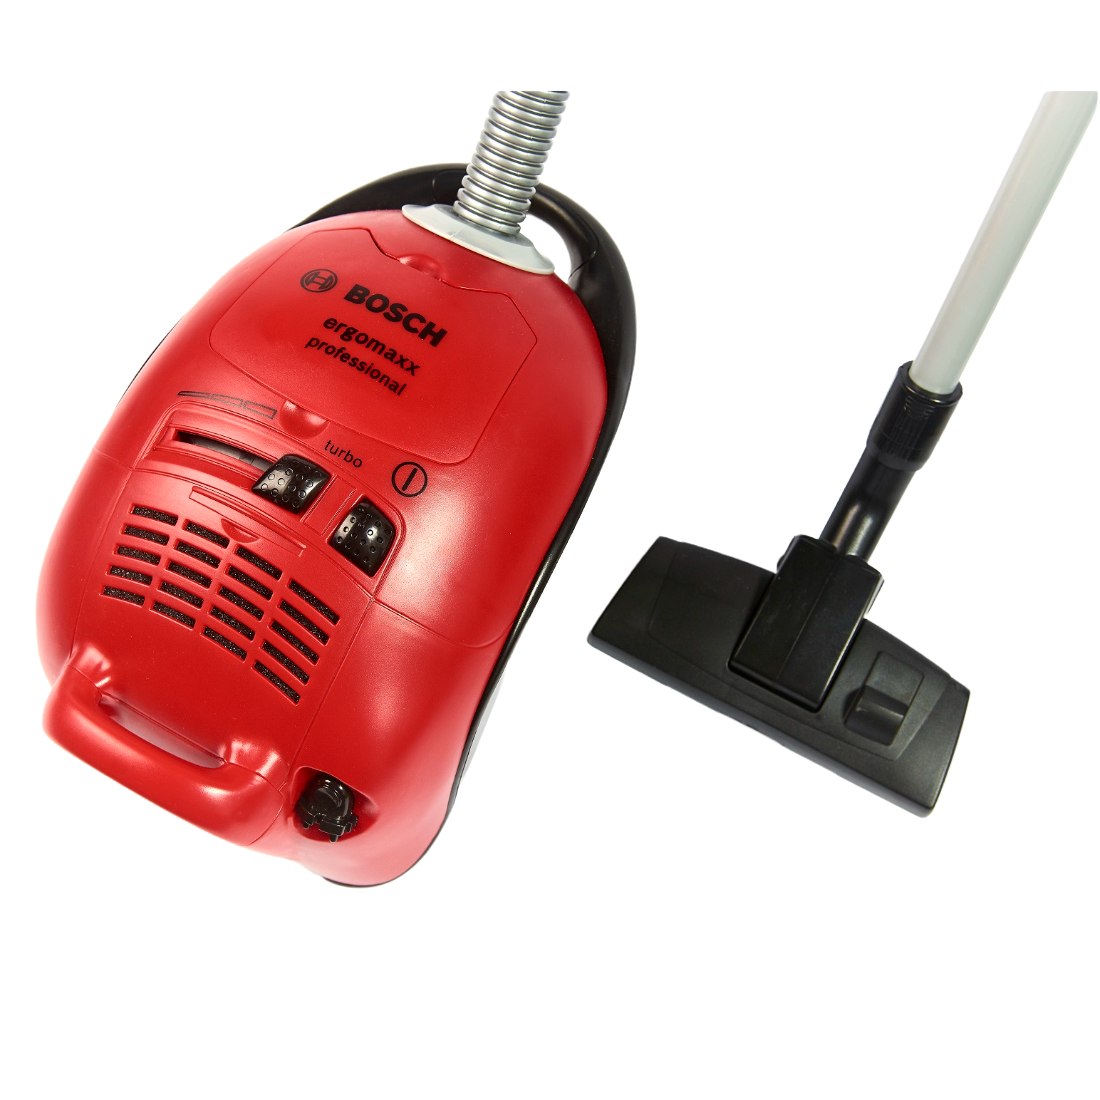 Игрушка Bosch Mini Пылесос, красный (6828) - фото 2